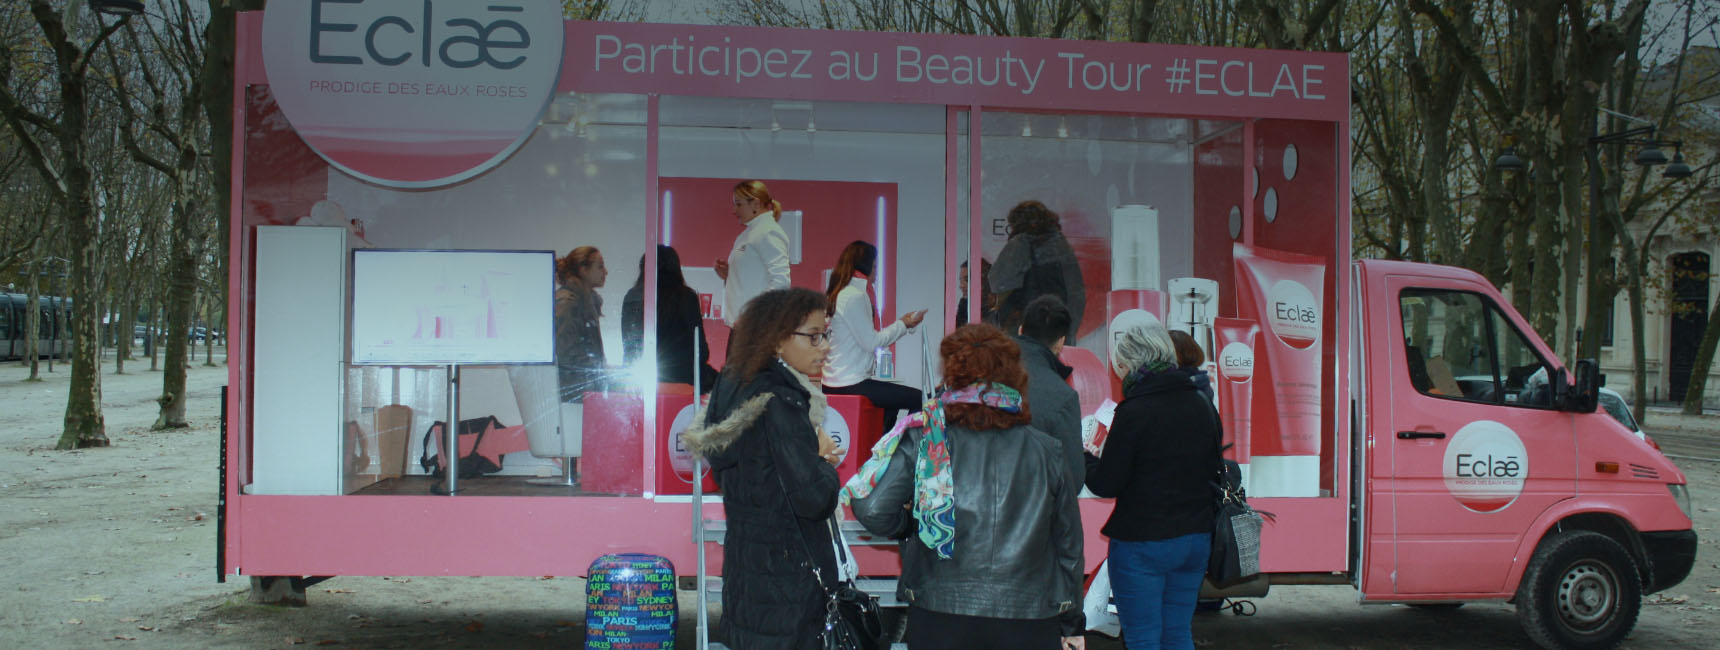 Dispositifs d'affichage mobile -Keemia Nice Agence marketing local en région Côte d'Azur